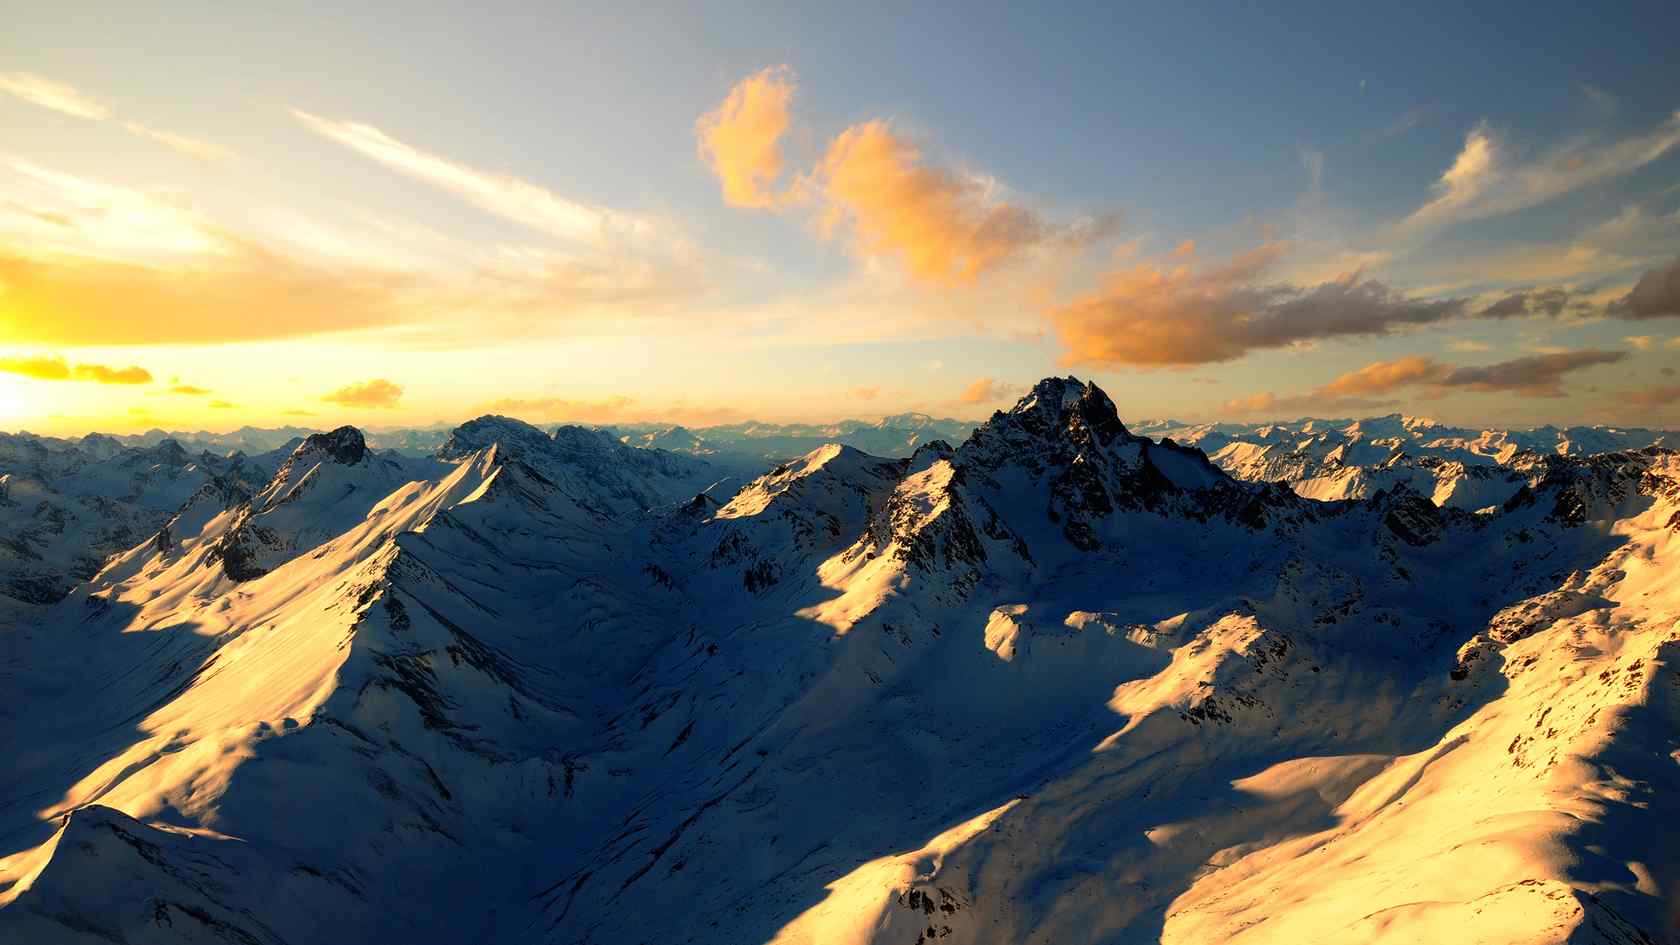 雪山上唯美的日出风景图片